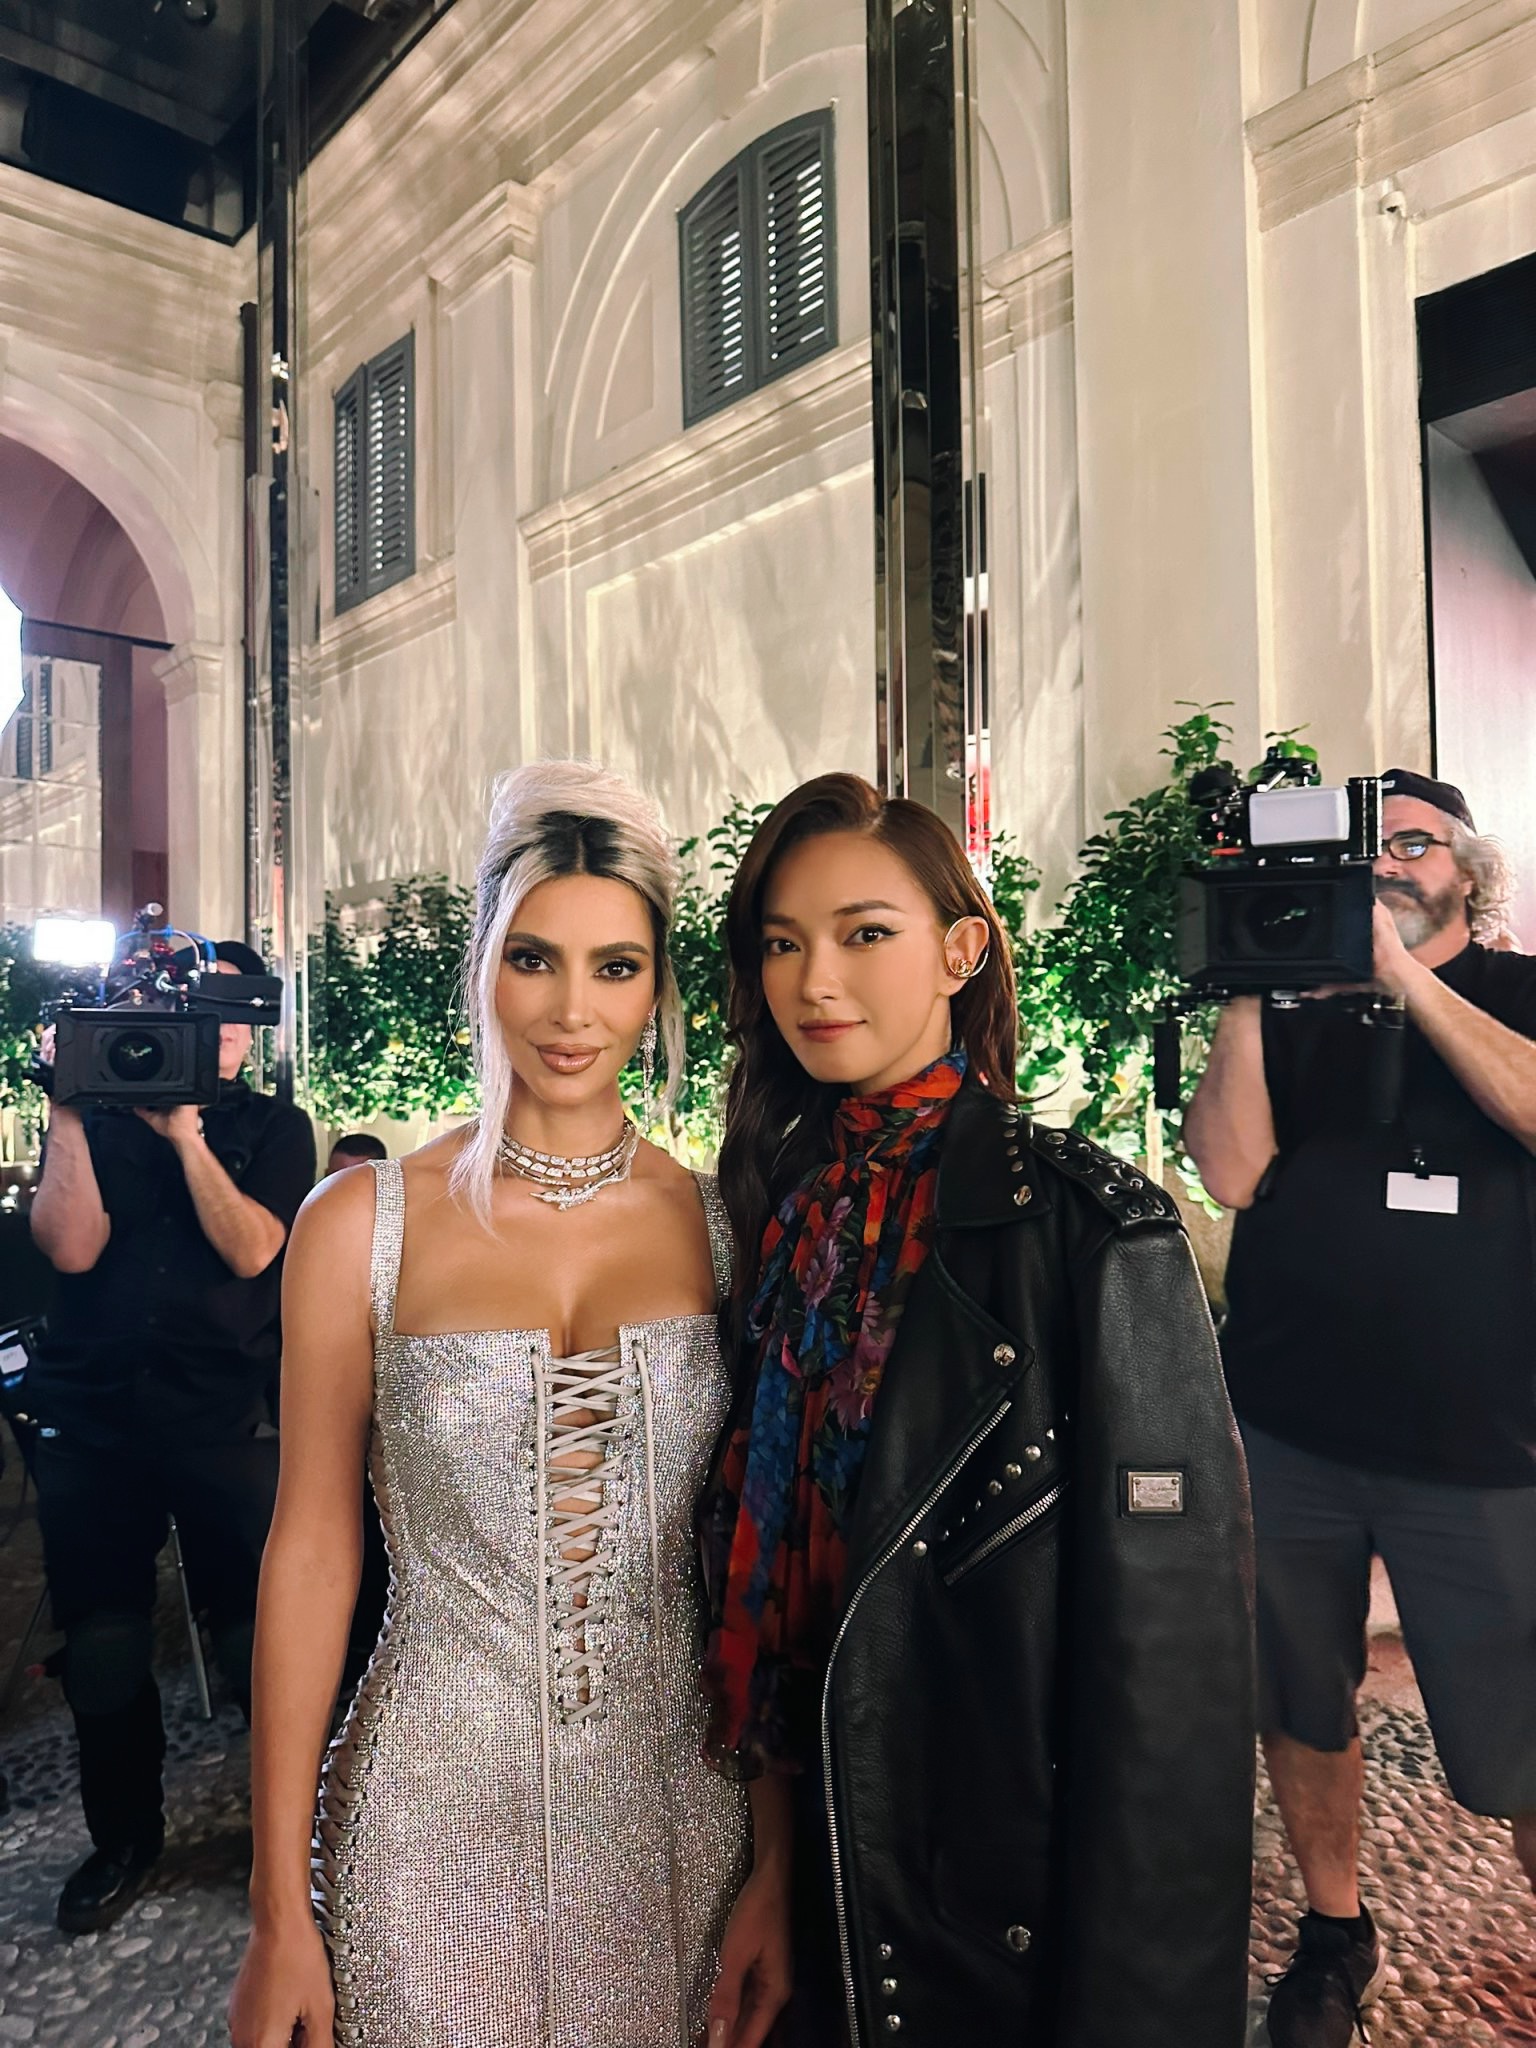 Châu Bùi cá tính trên hàng ghế đầu show Dolce & Gabbana, chụp ảnh thân thiết cùng Kim Kardashian - ảnh 2